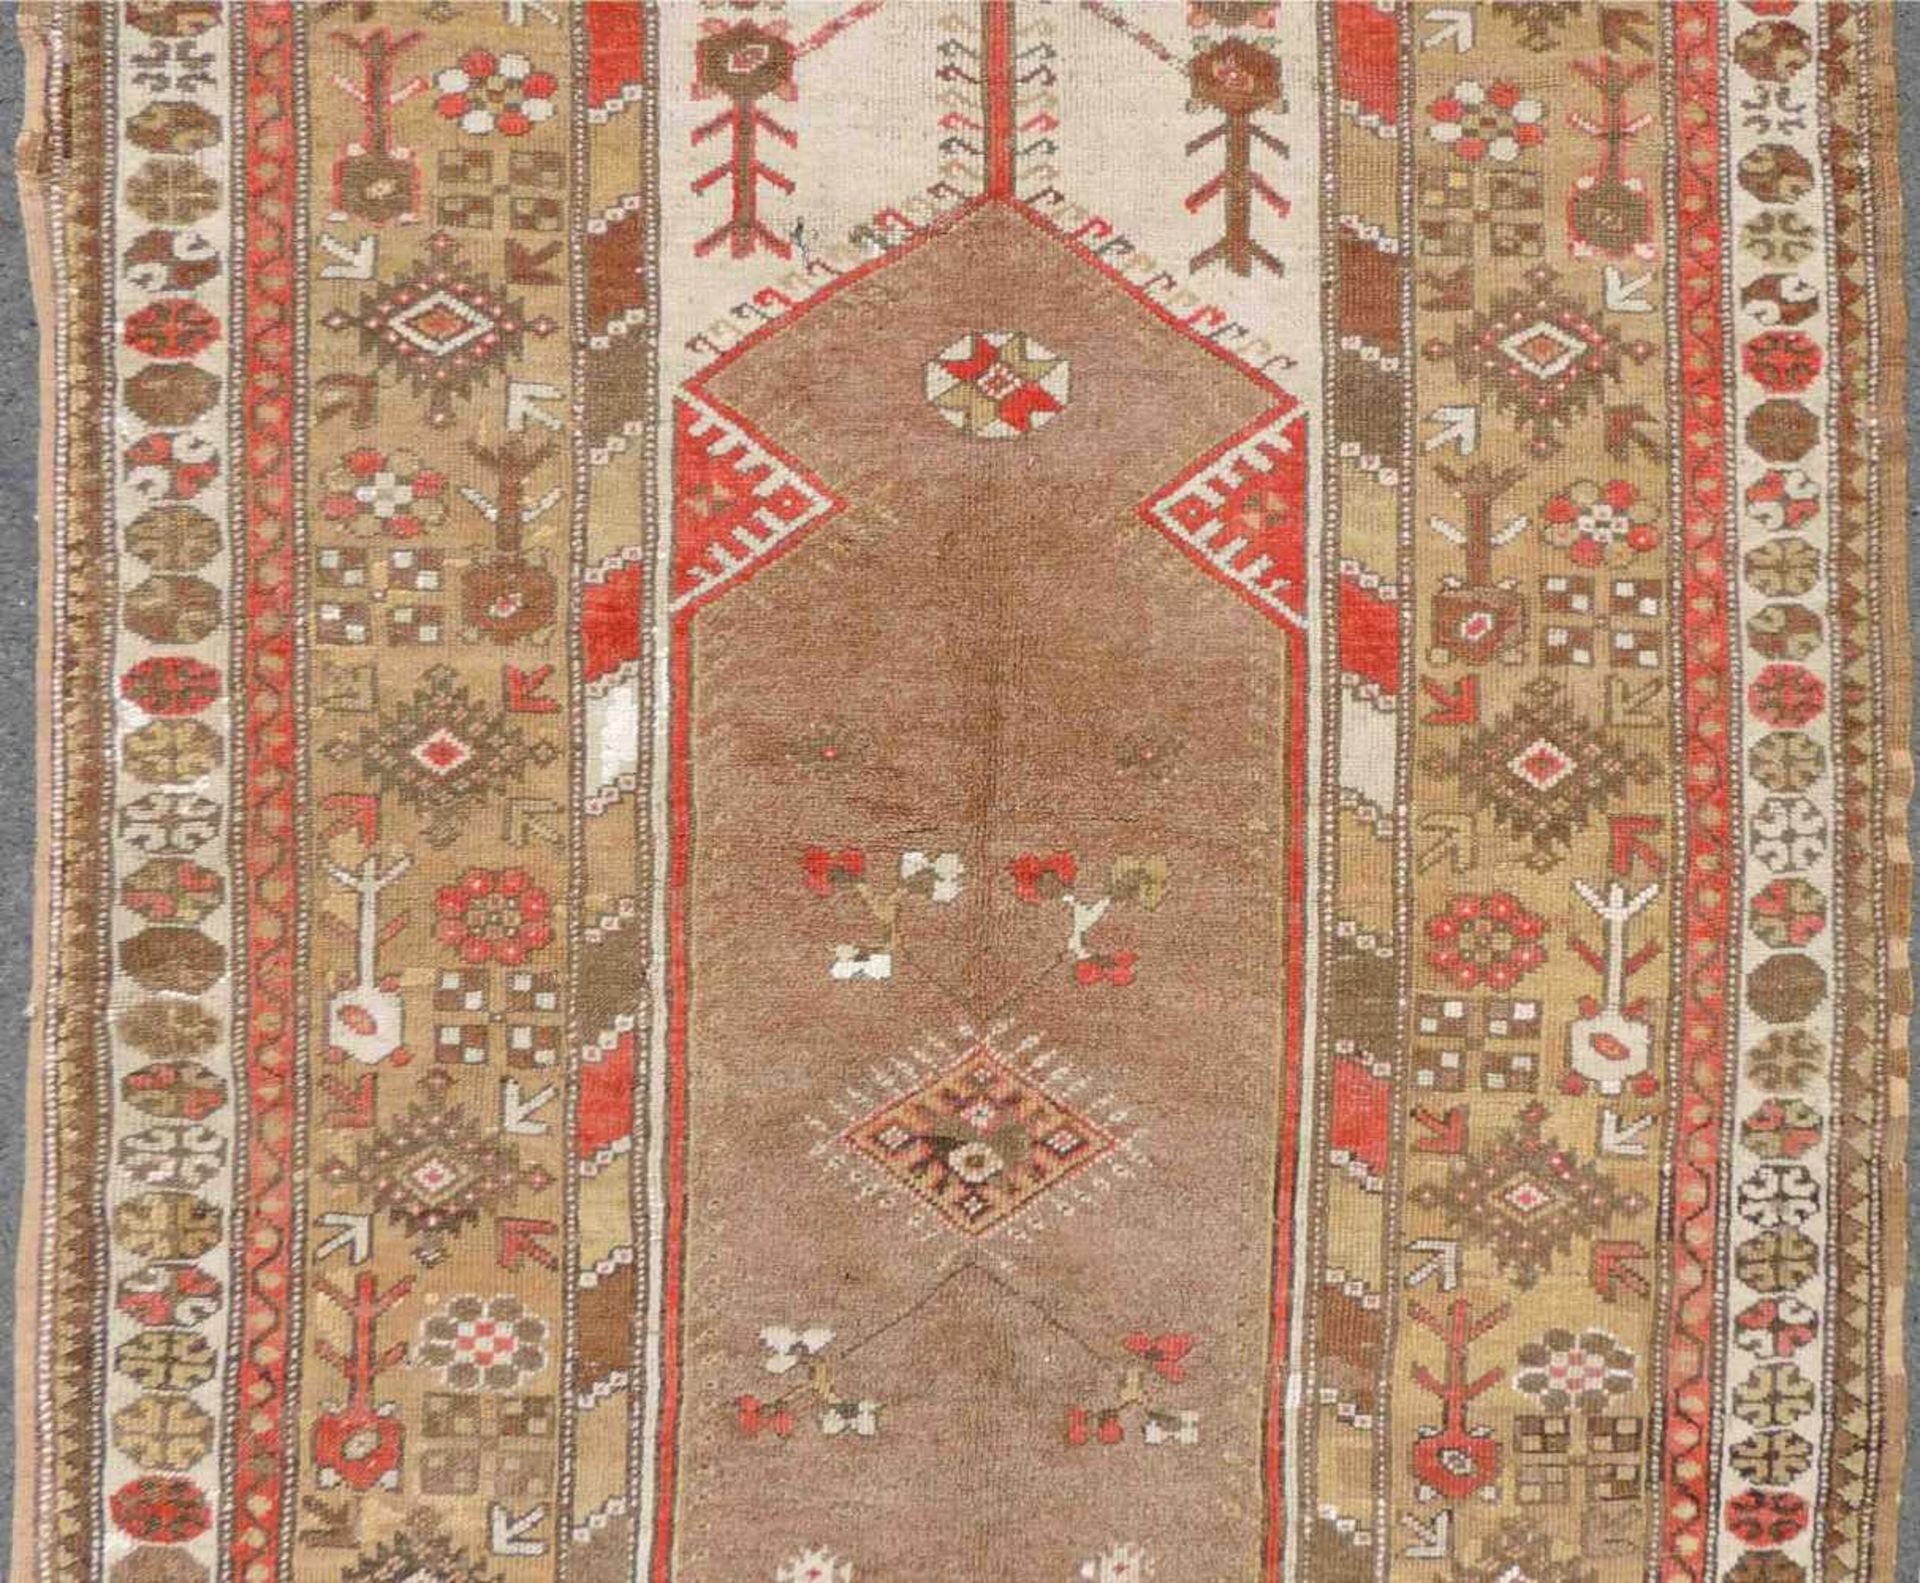 Melas Gebetsteppich. Türkei. West Anatolien. Antik um 1900. 201 cm x 128 cm. Handgeknüpft. Wolle auf - Bild 3 aus 8